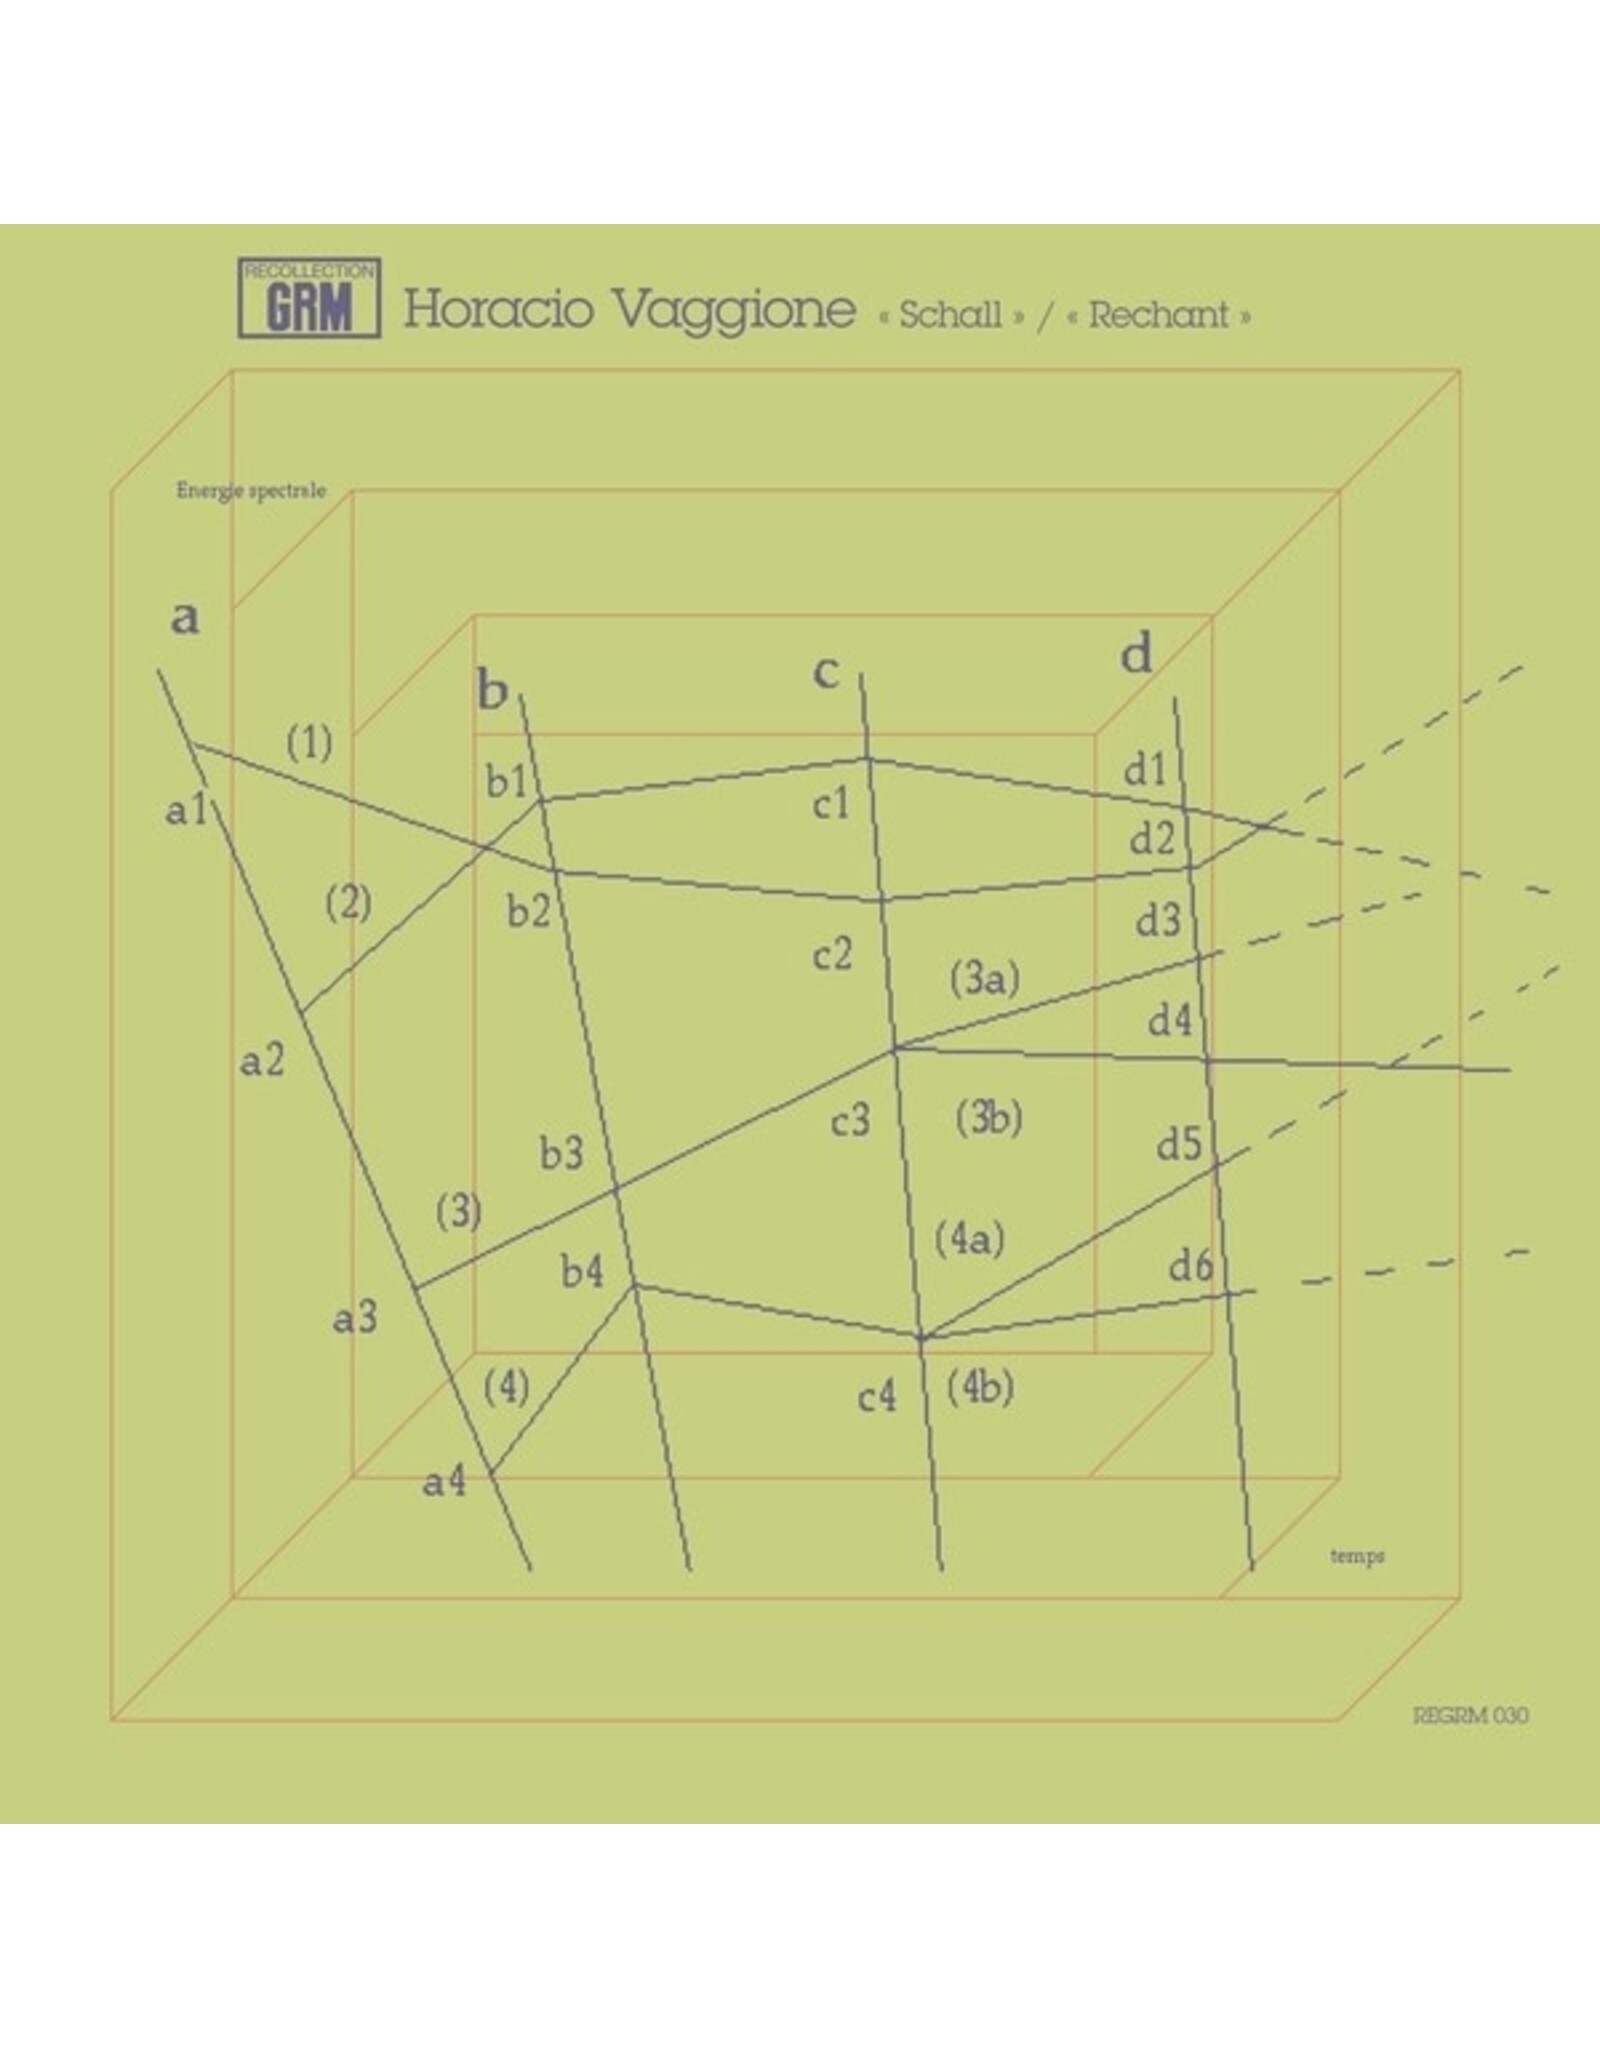 ReGRM Vaggione, Horacio: Schall/Rechant LP